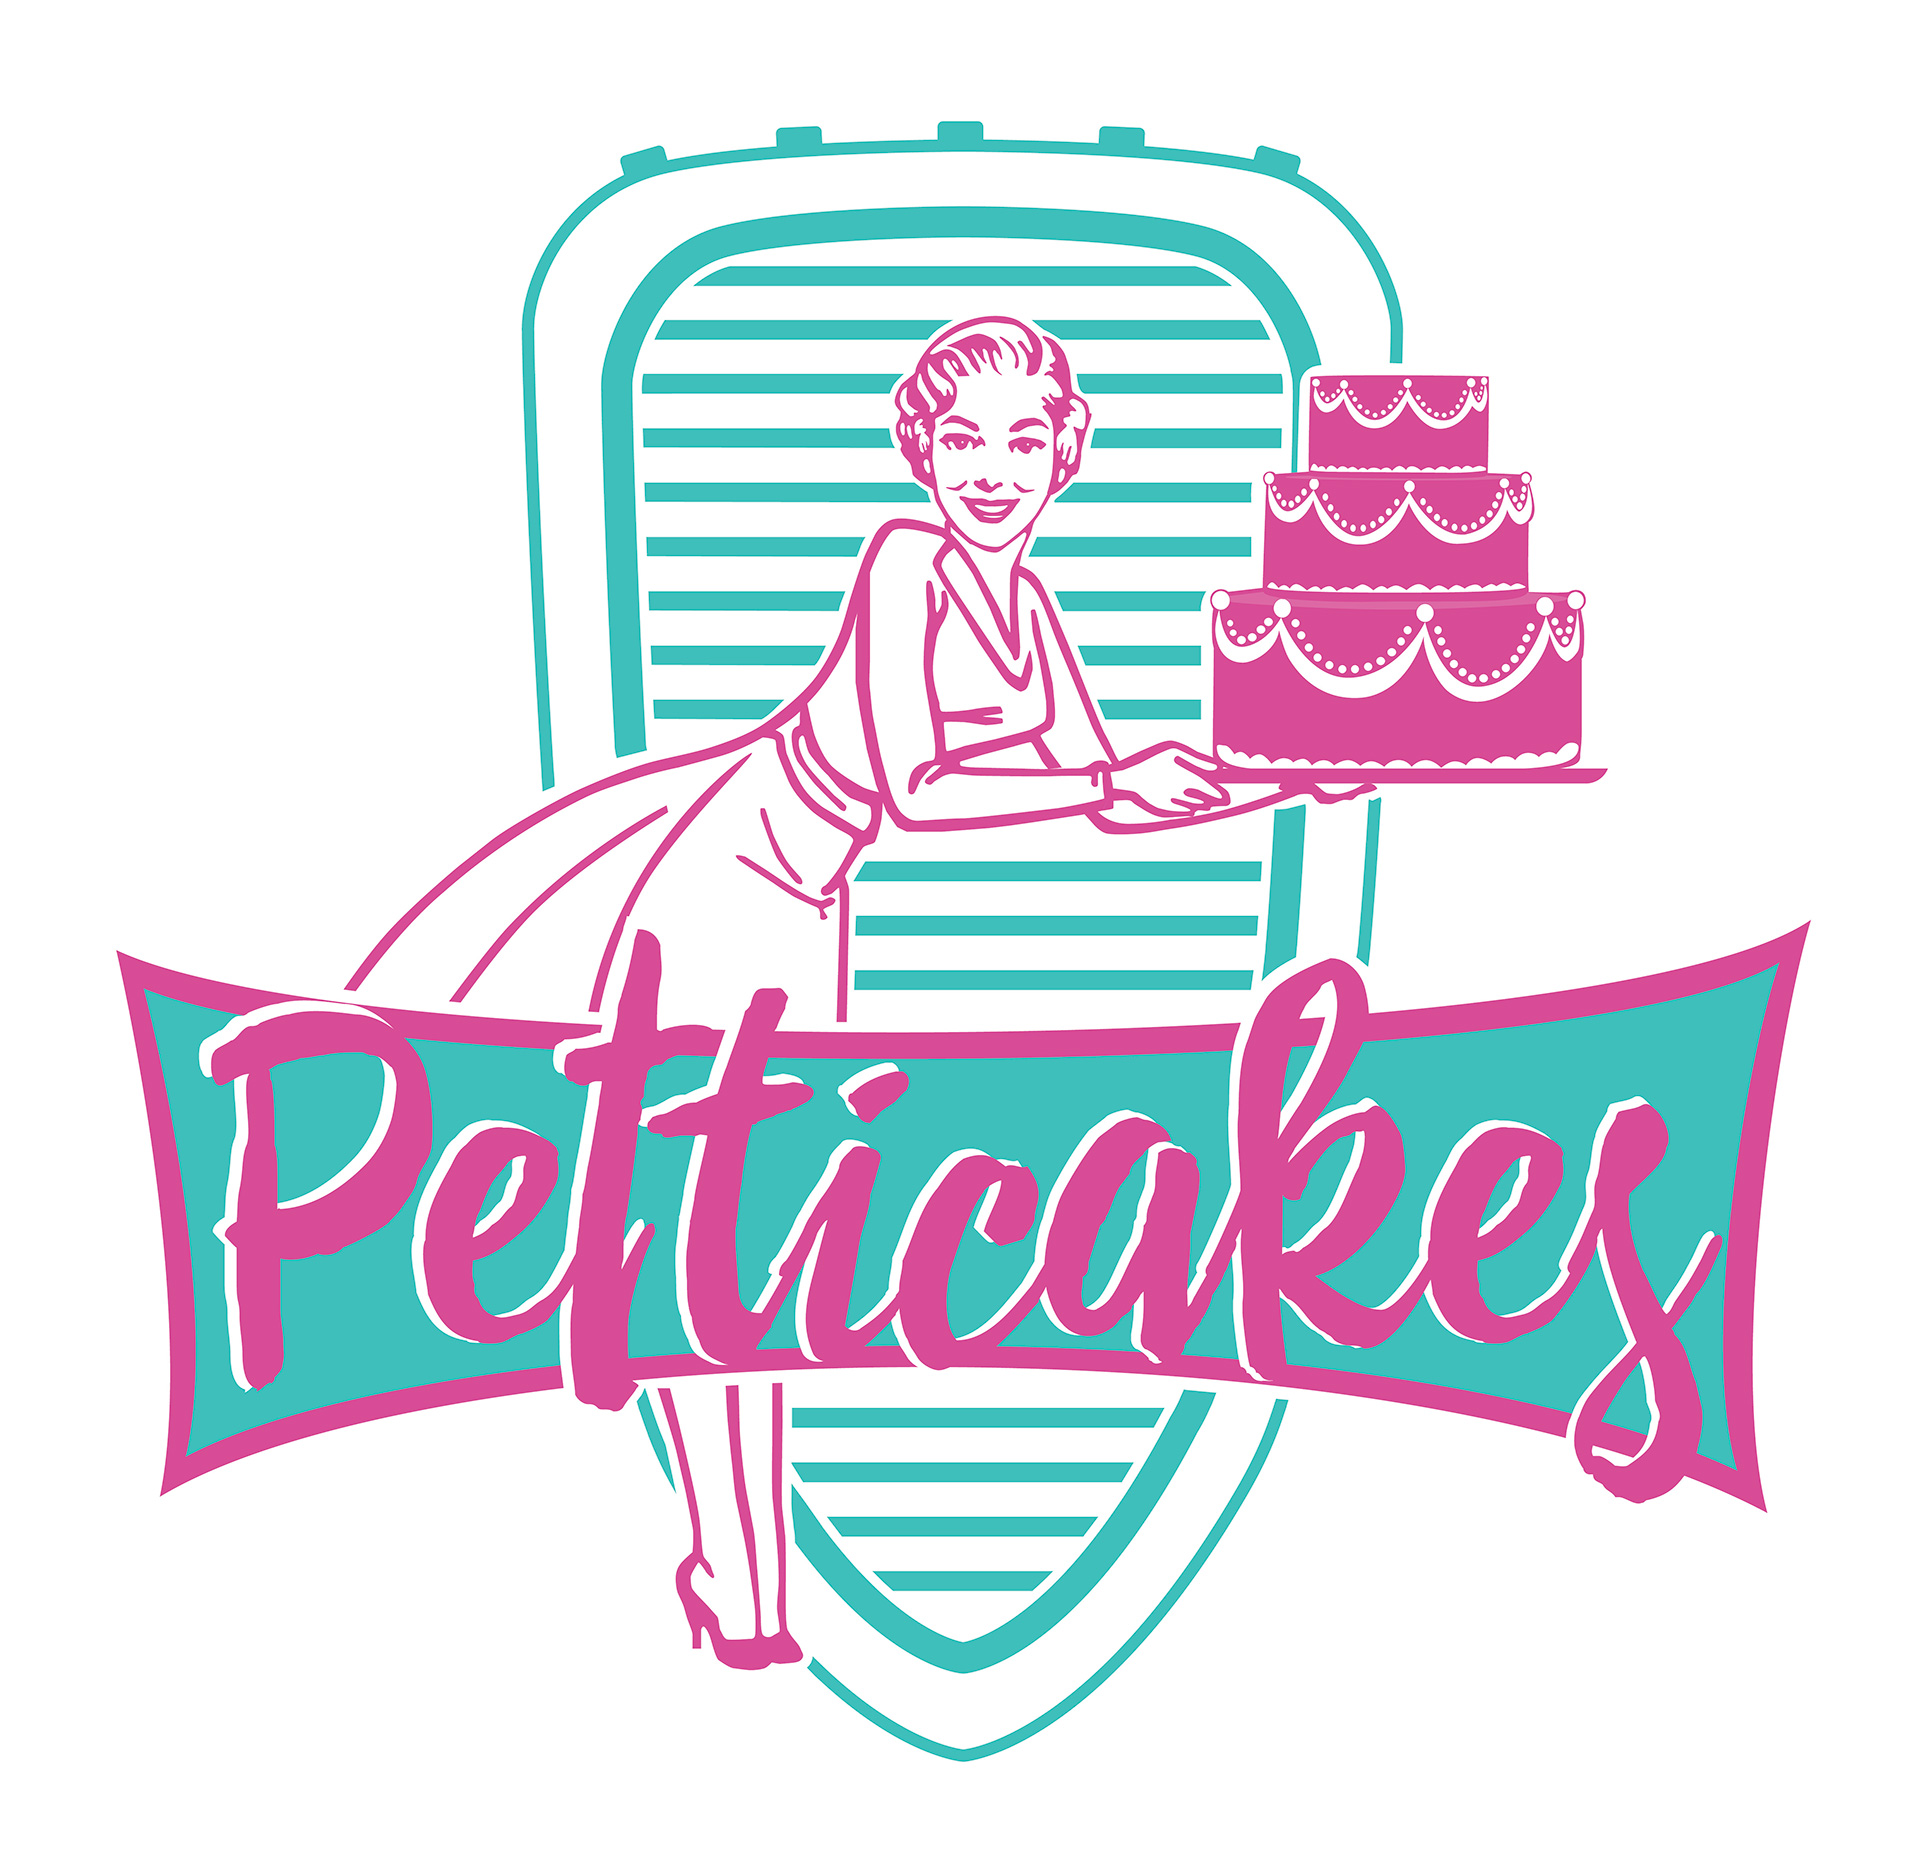 Petticakes